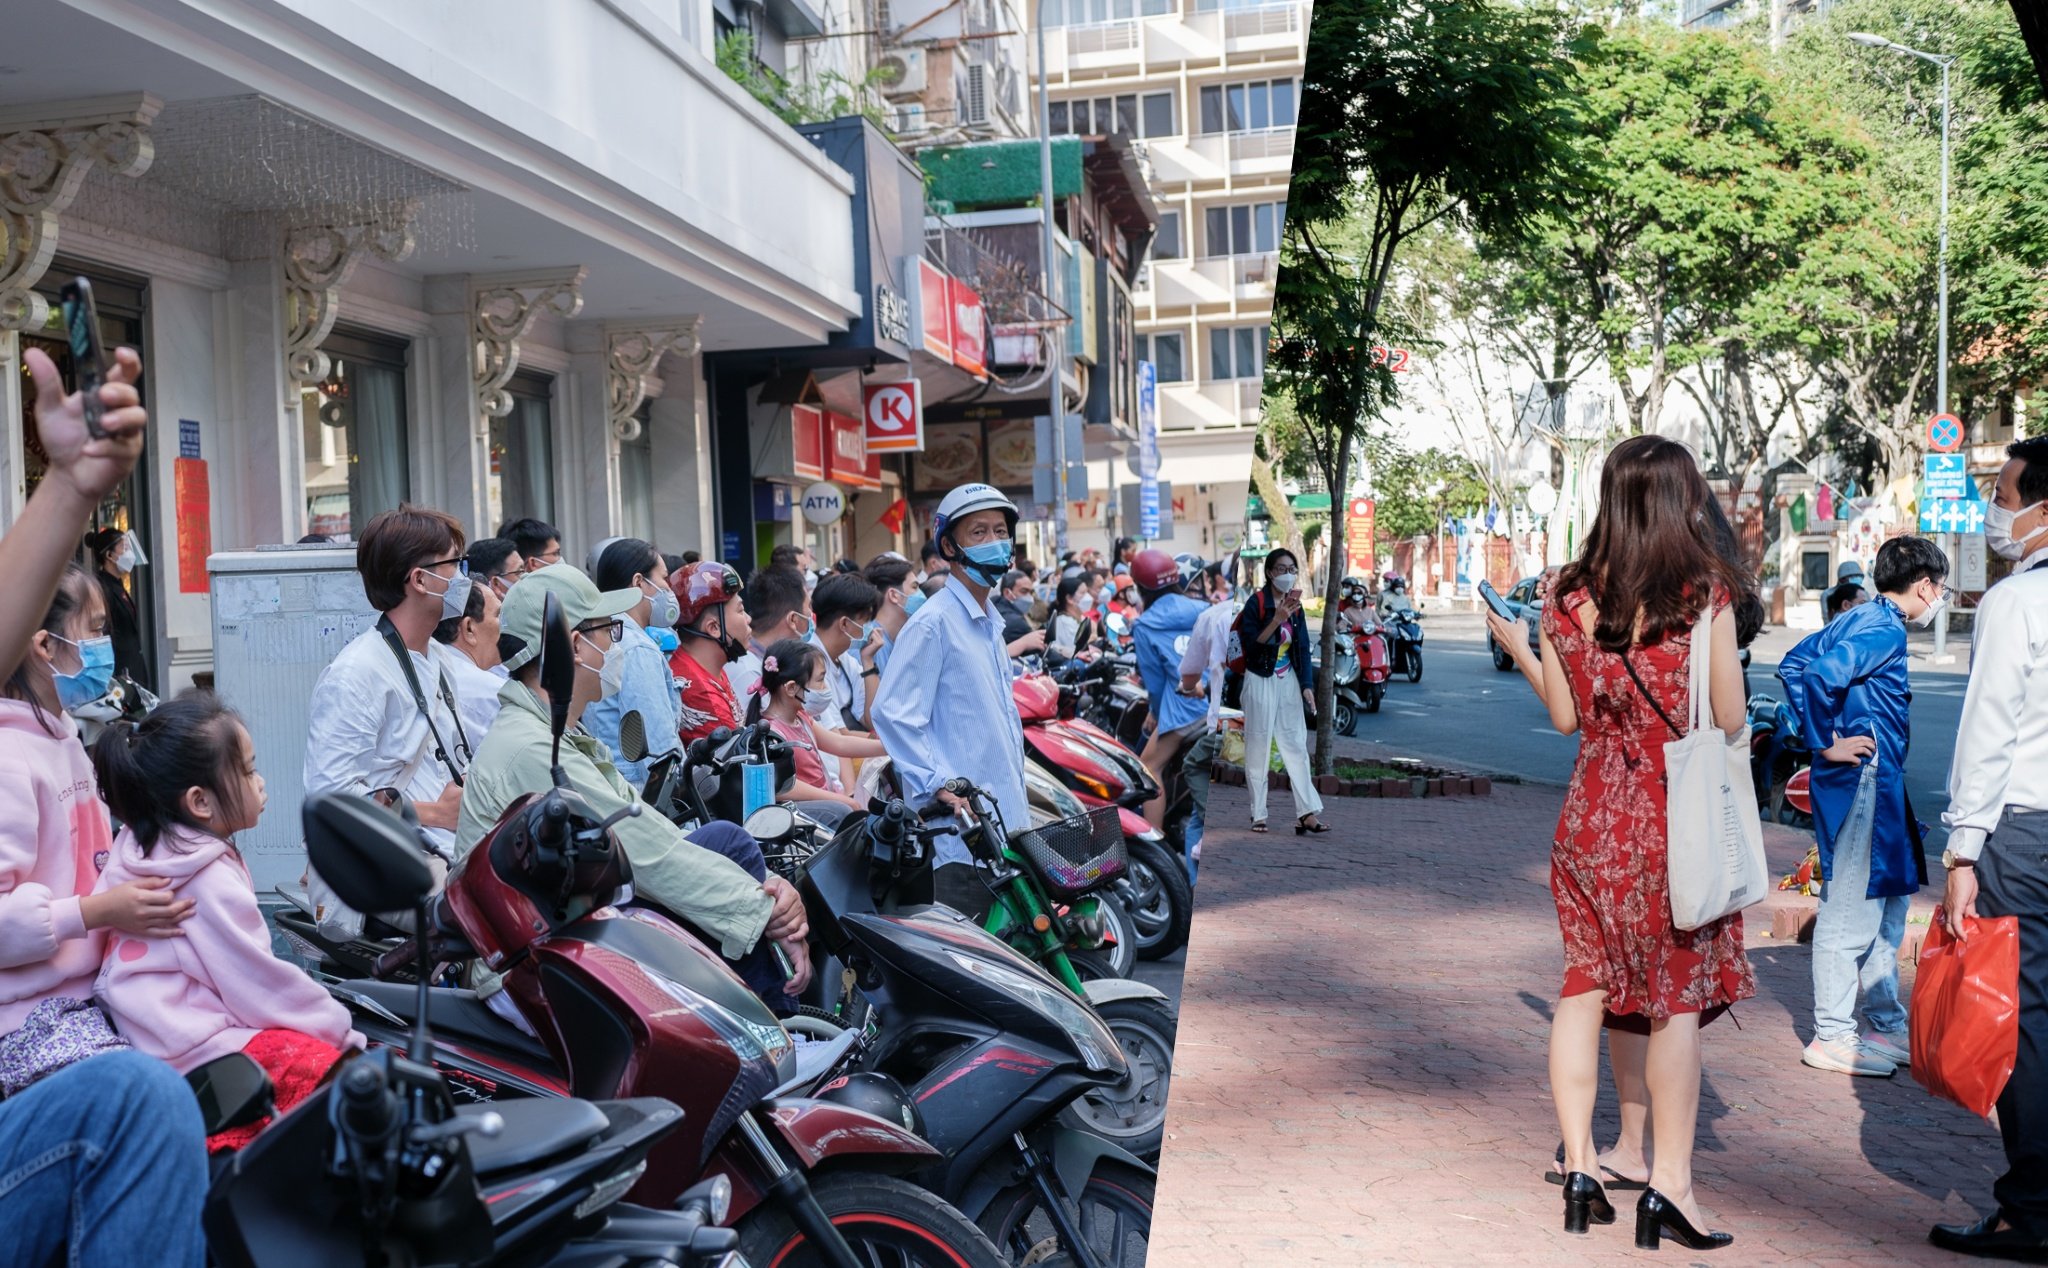 Sài Gòn: Không gian thịnh vượng, đa dạng văn hóa và sự phát triển nhanh chóng là những đặc điểm nổi bật của Sài Gòn - thành phố lớn nhất và sôi động nhất Việt Nam. Hãy cùng ngắm nhìn những hình ảnh đẹp của Sài Gòn để hiểu rõ hơn về một thành phố đang phát triển từng ngày và đáng sống nhất châu Á.